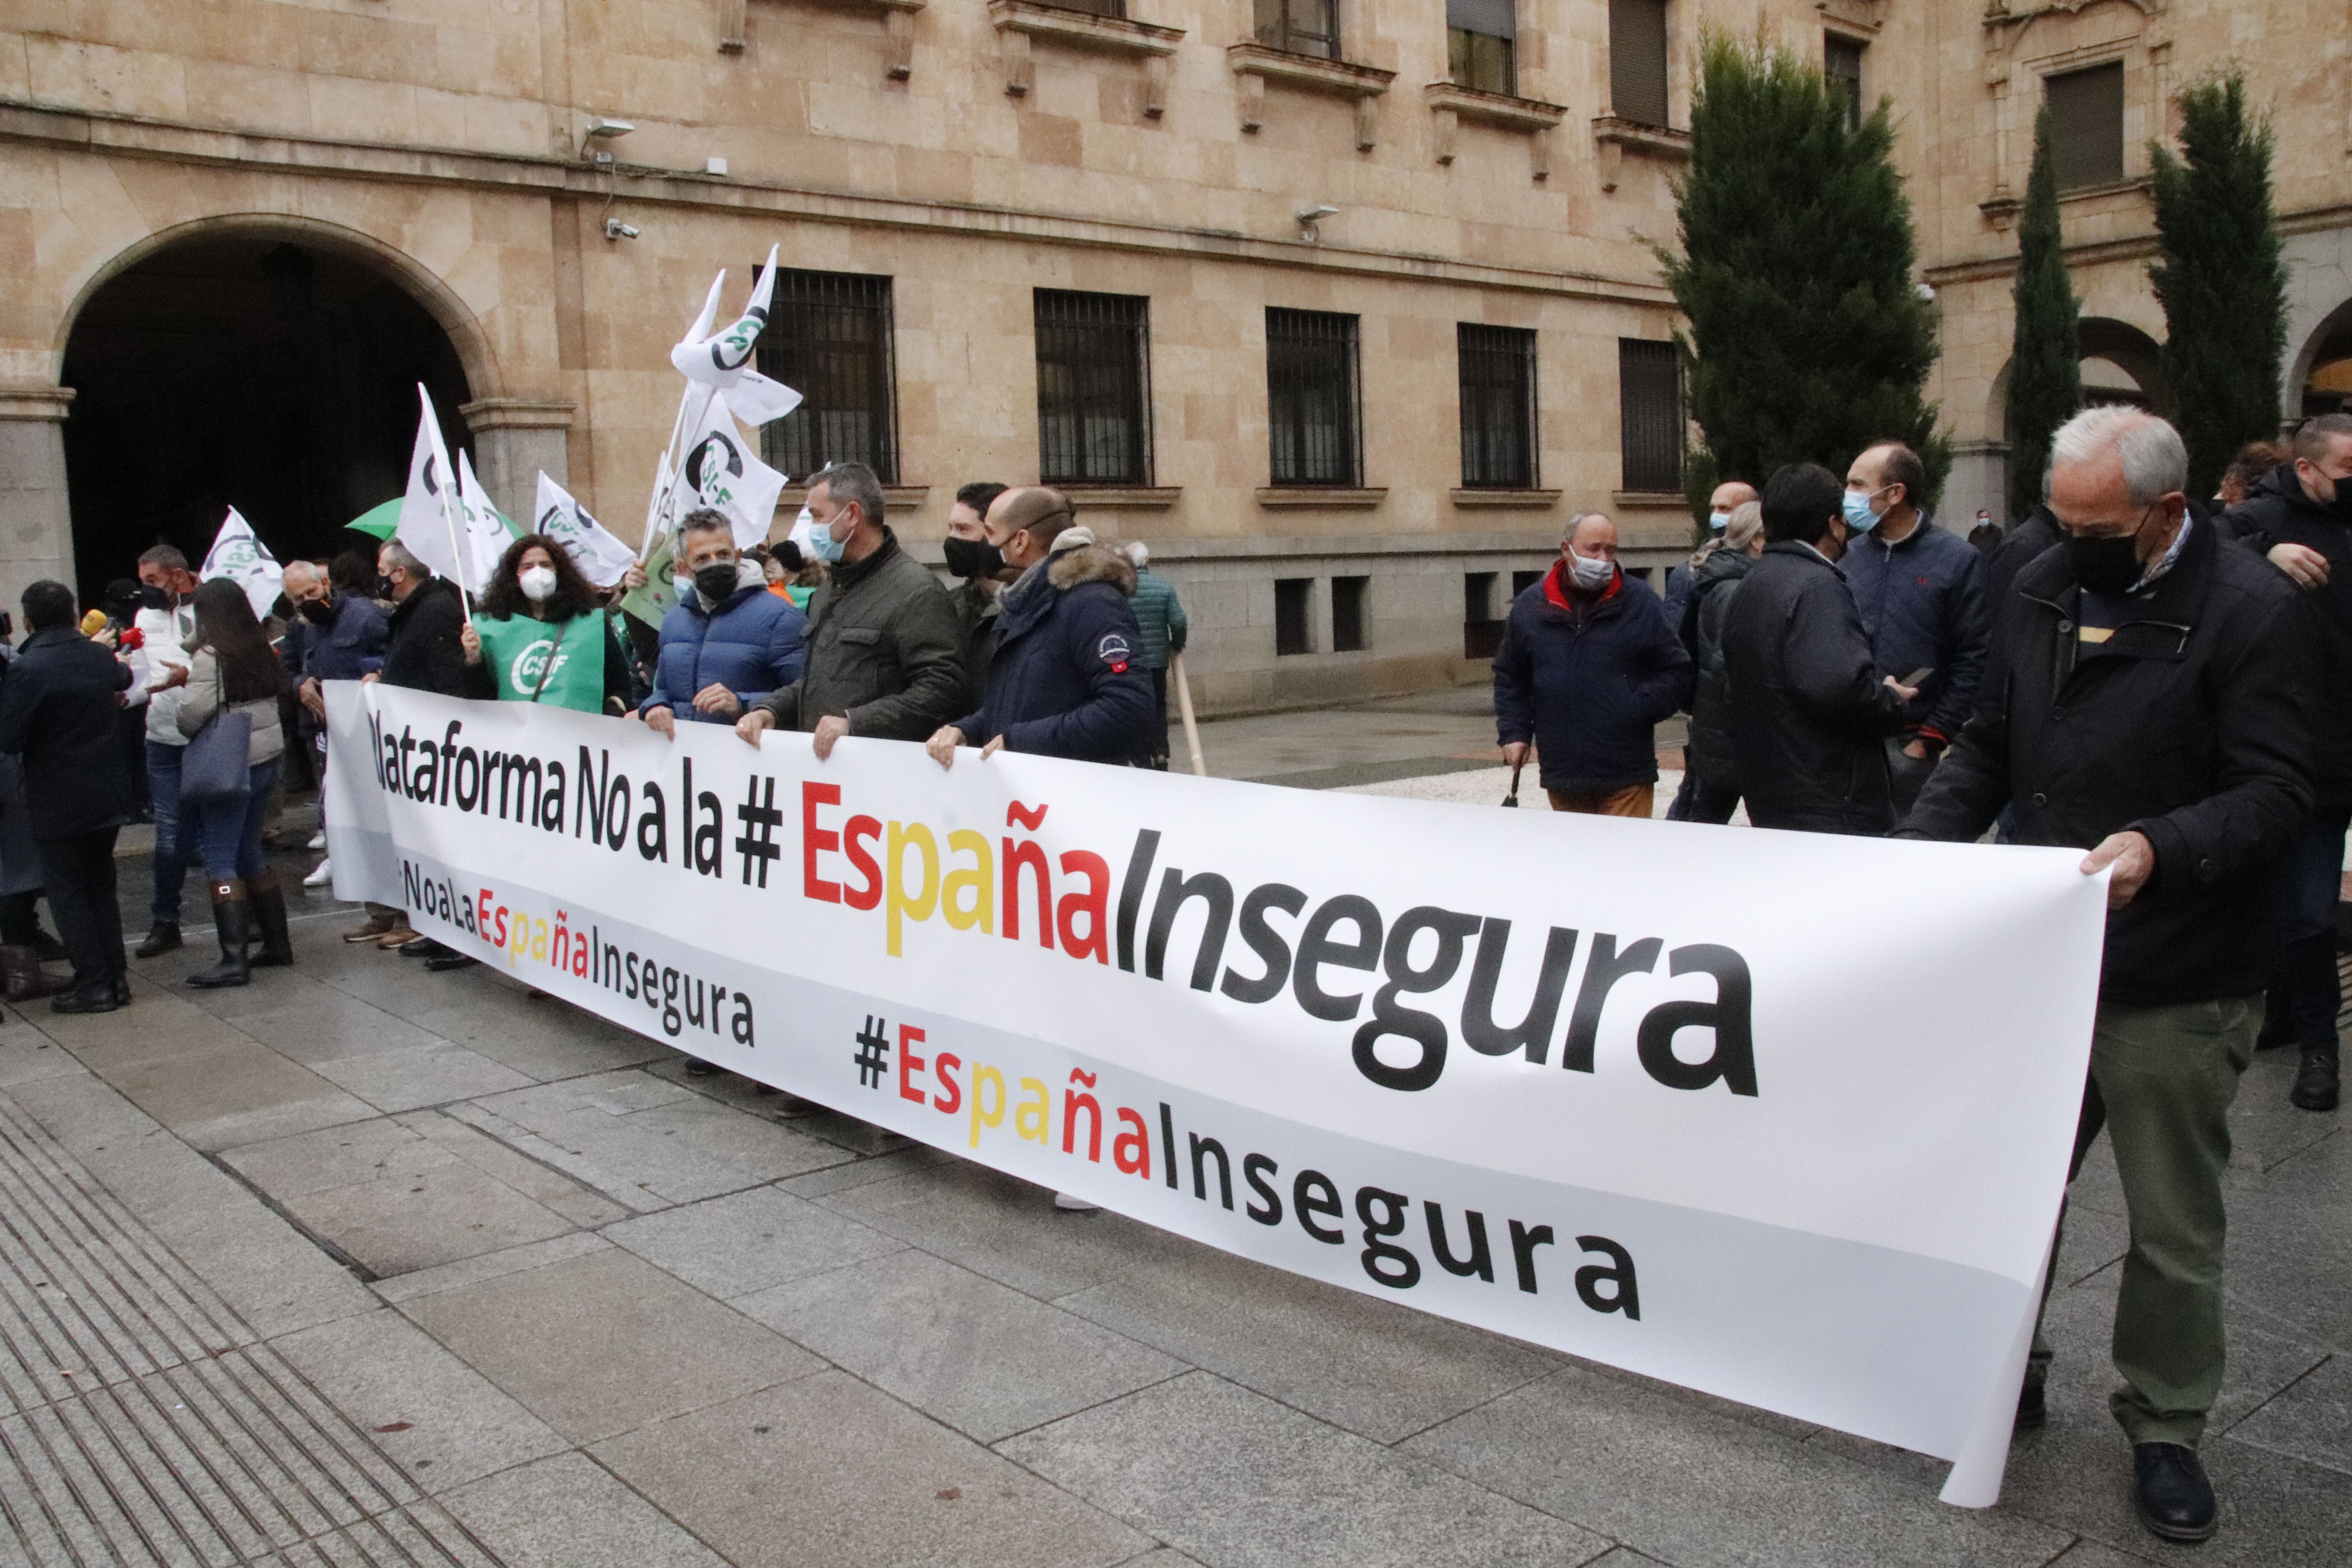 Concentración sindicatos policiales "No a la España insegura"